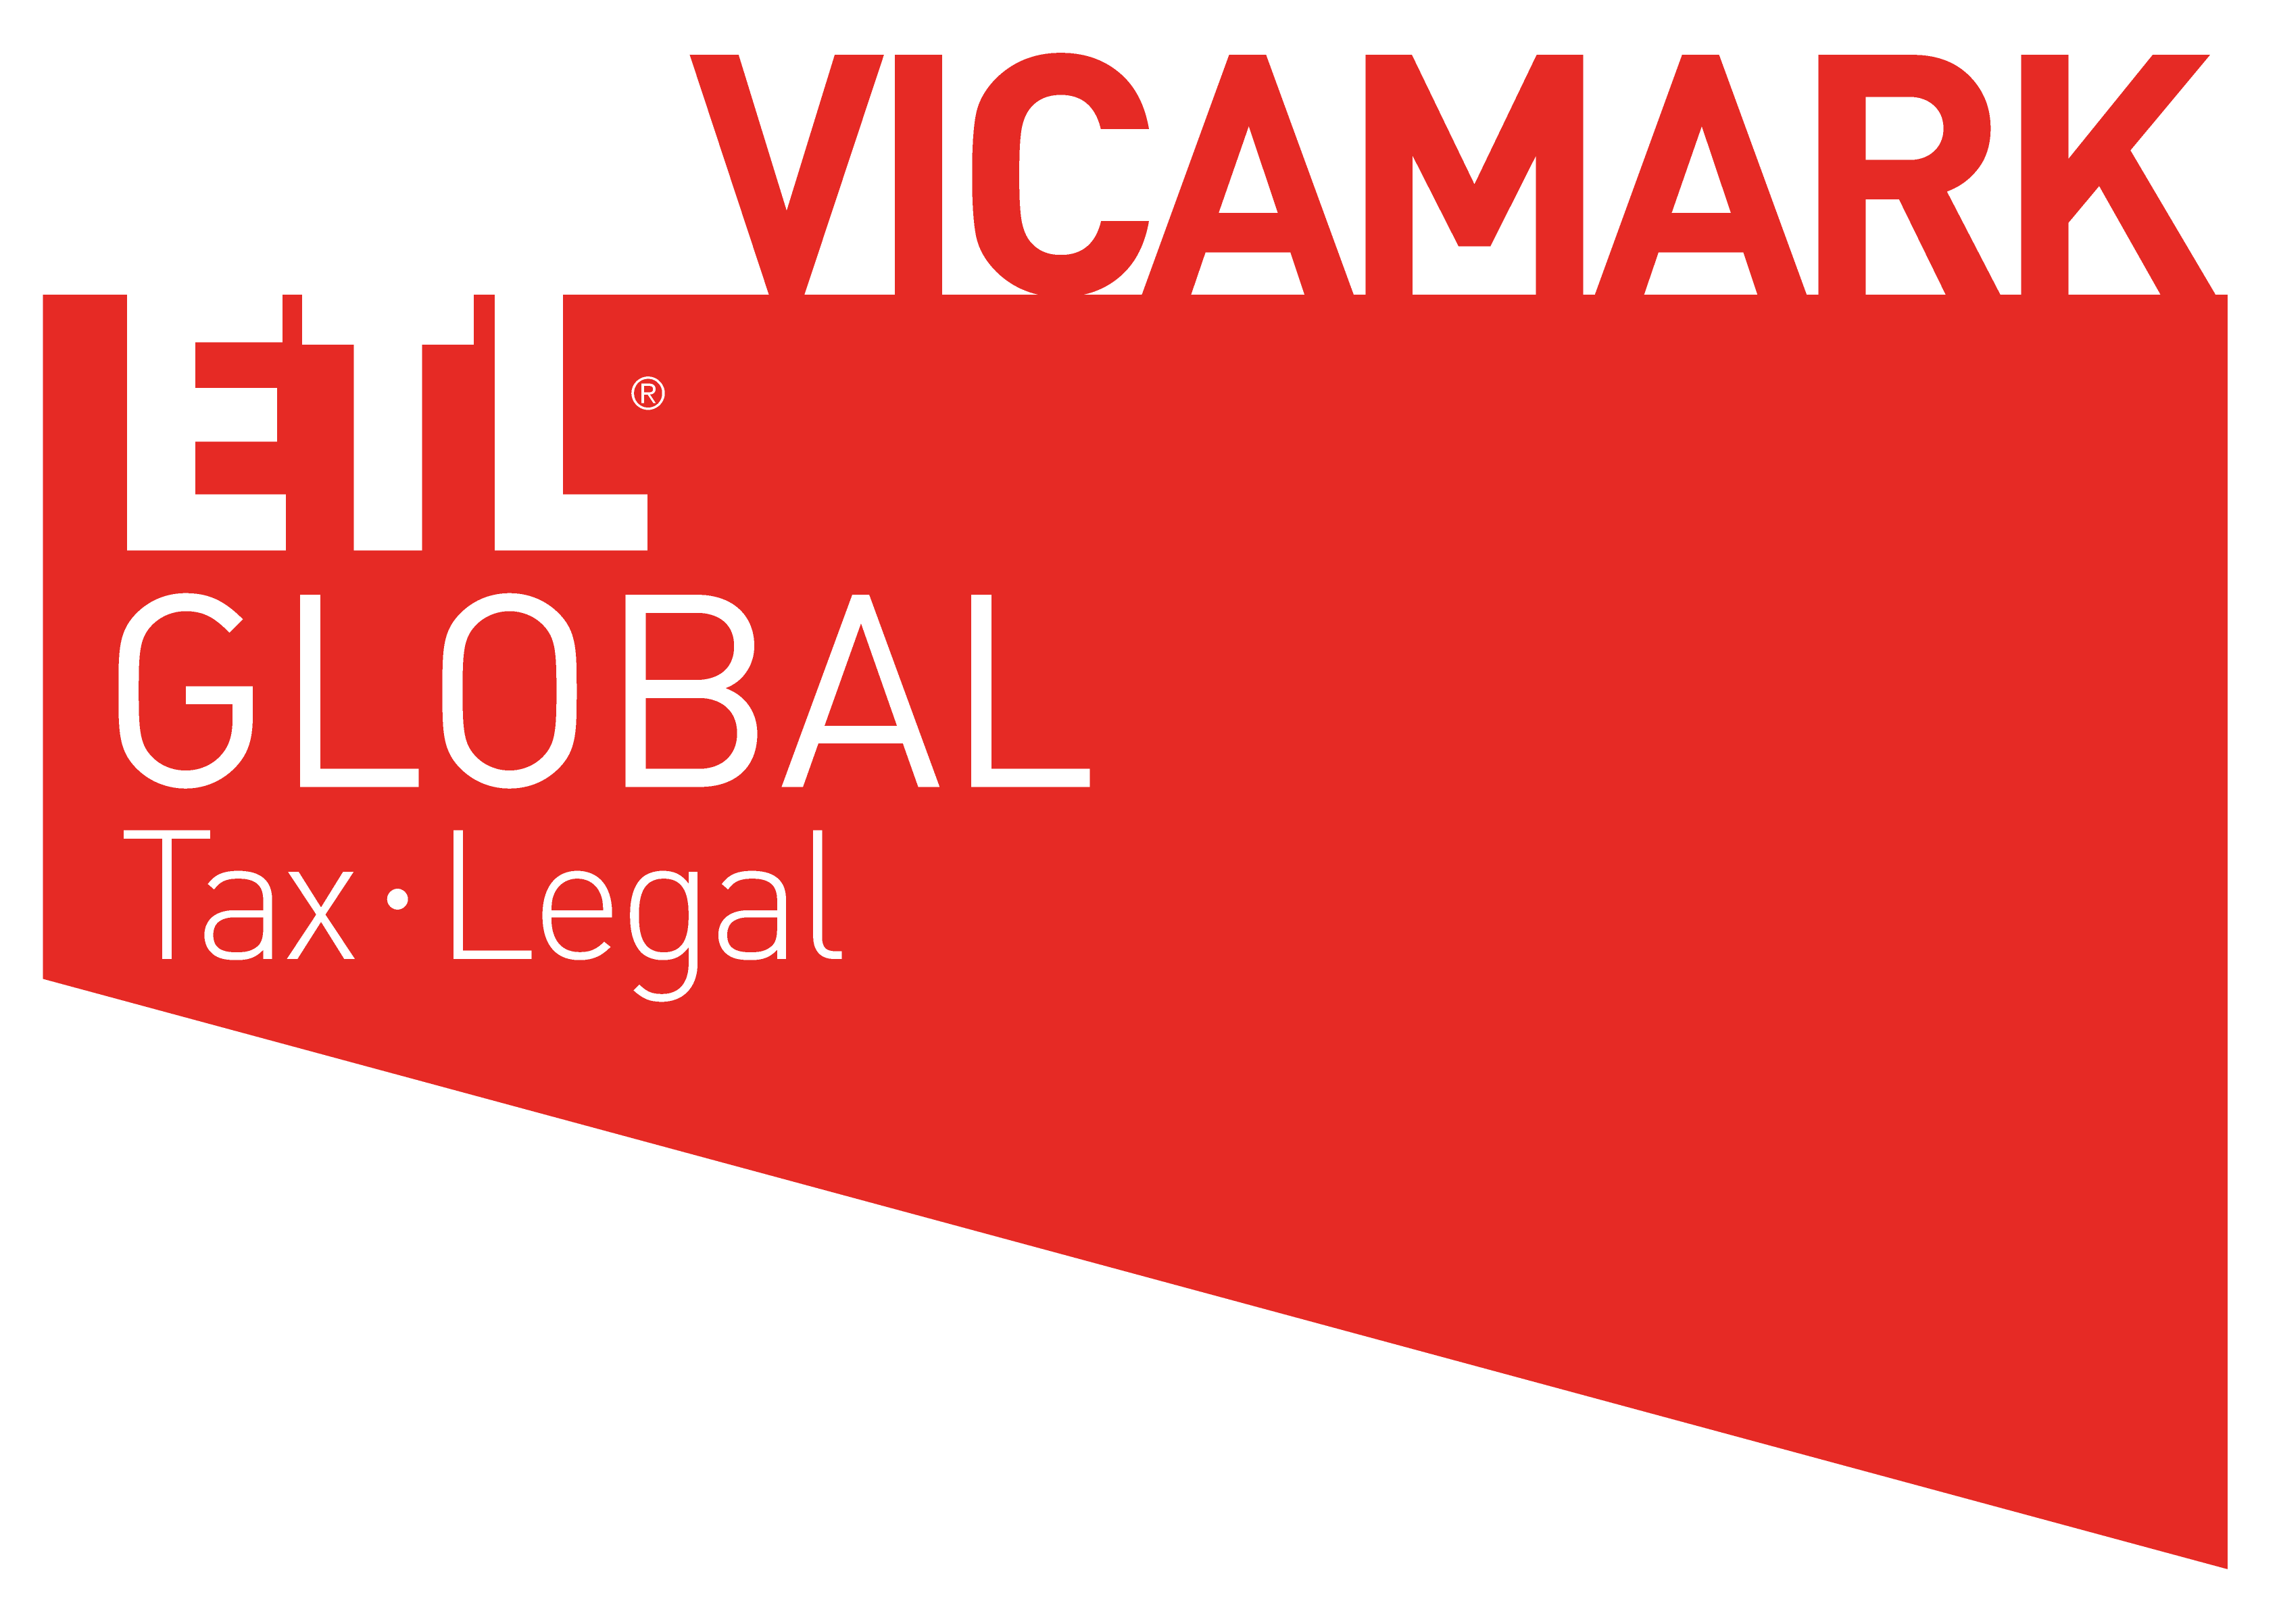 VICAMARK - ETL GLOBAL